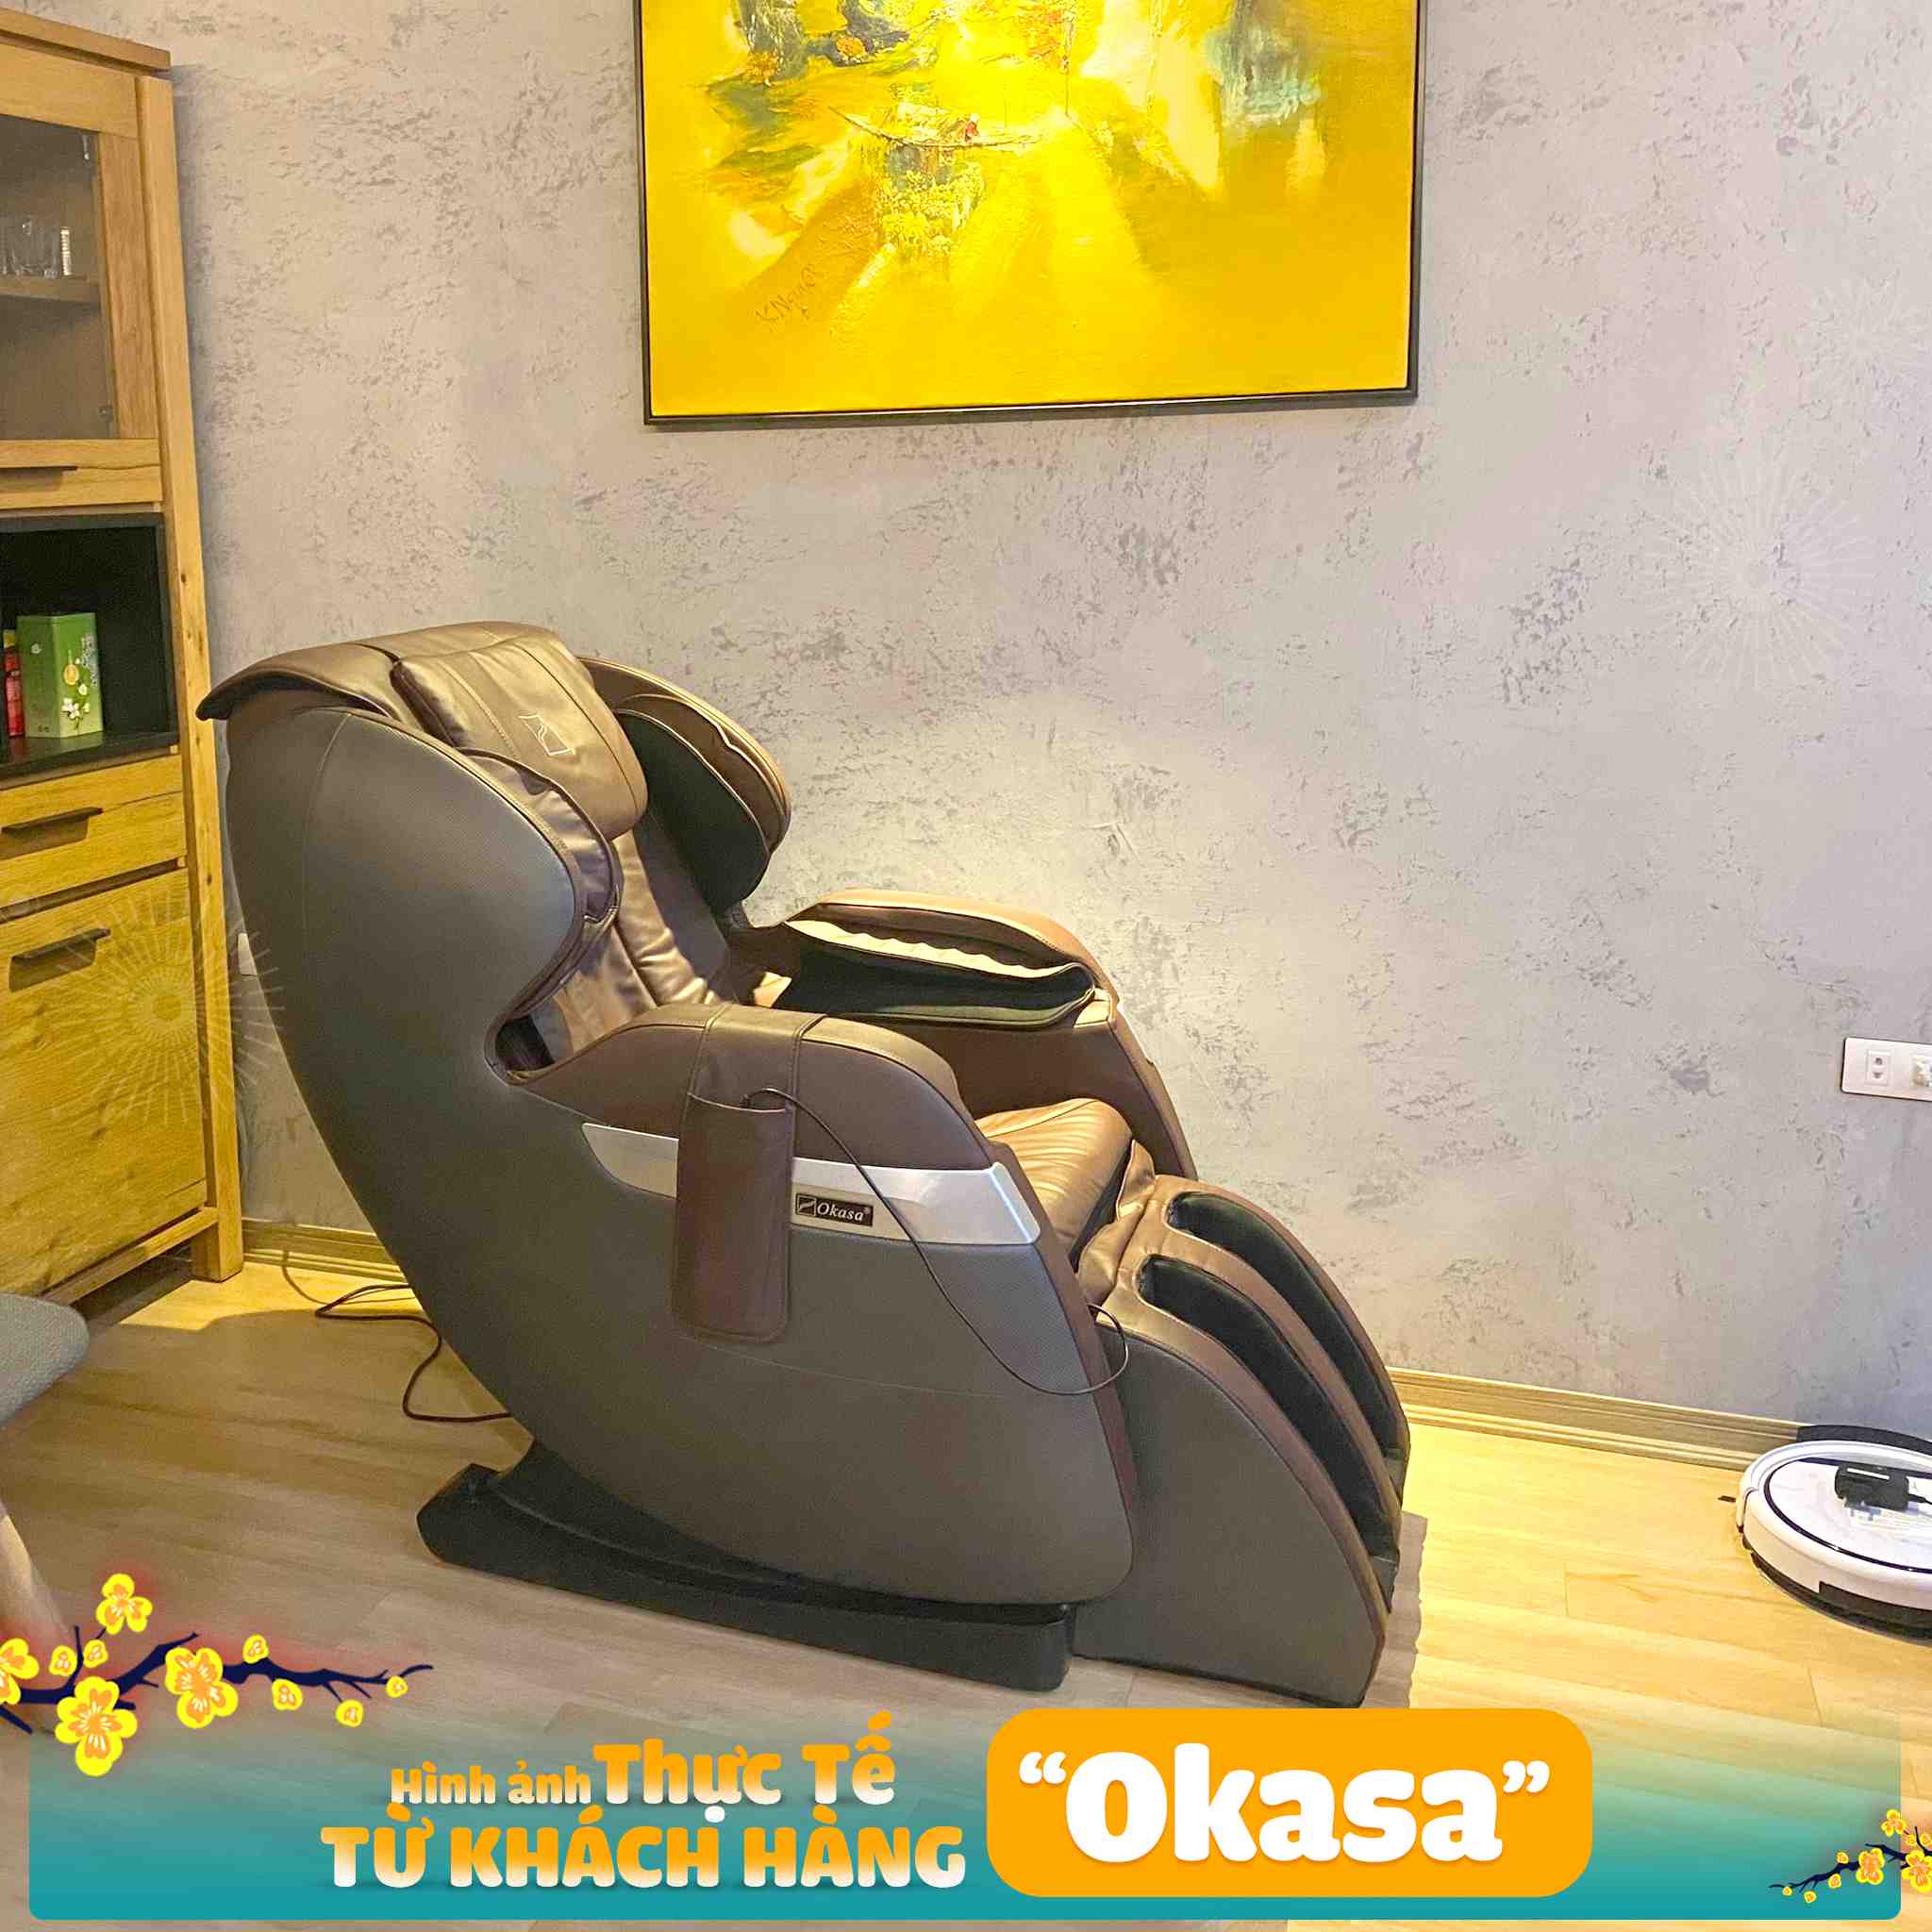 Ghế massage Okasa OS-268 Plus